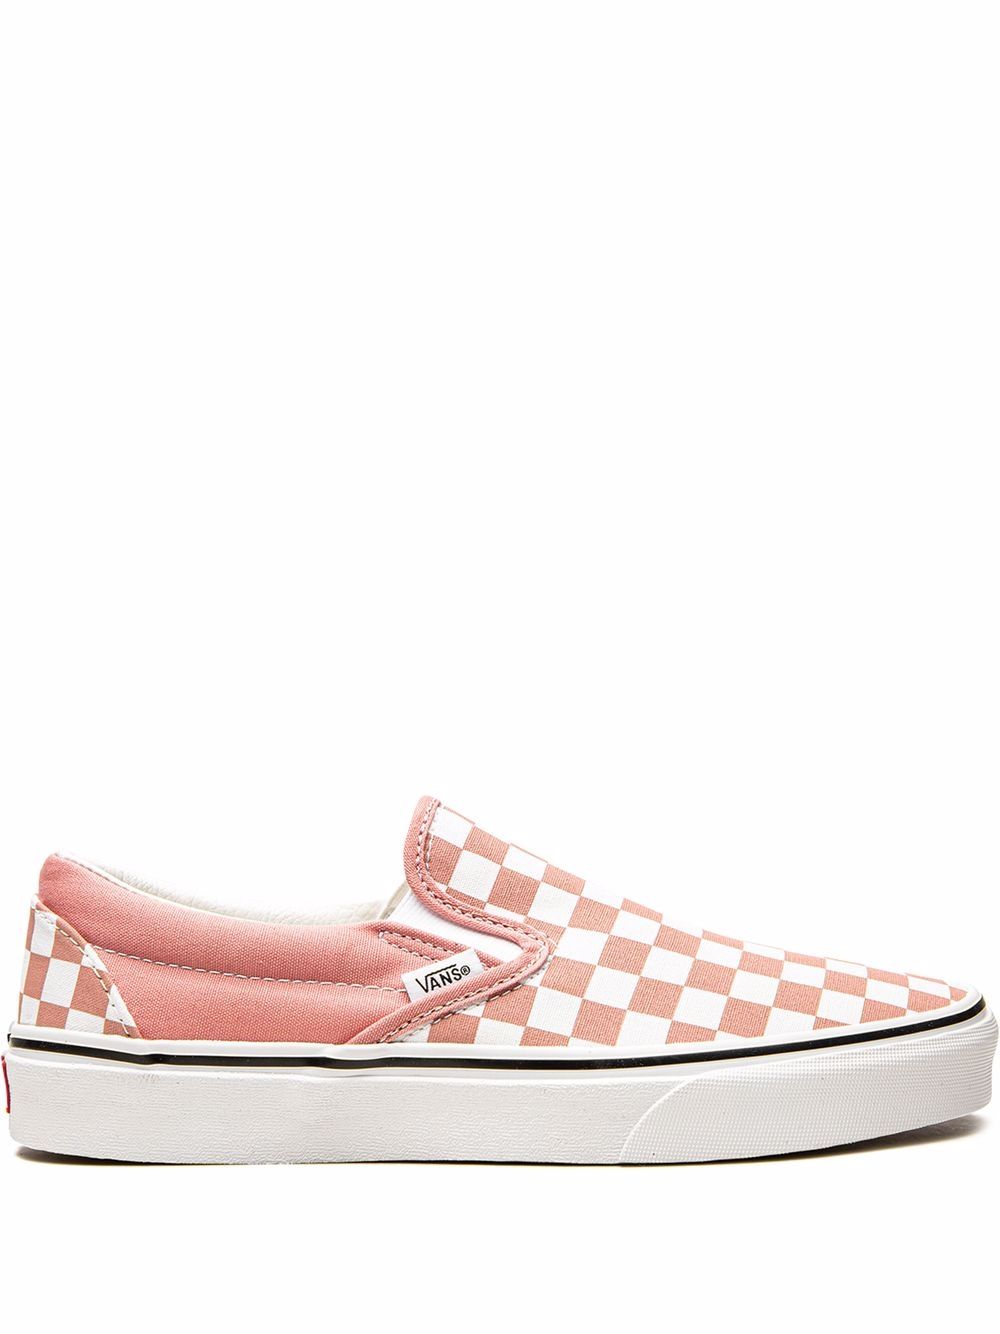 Vans Classic Slip-On sneakers - Pink von Vans